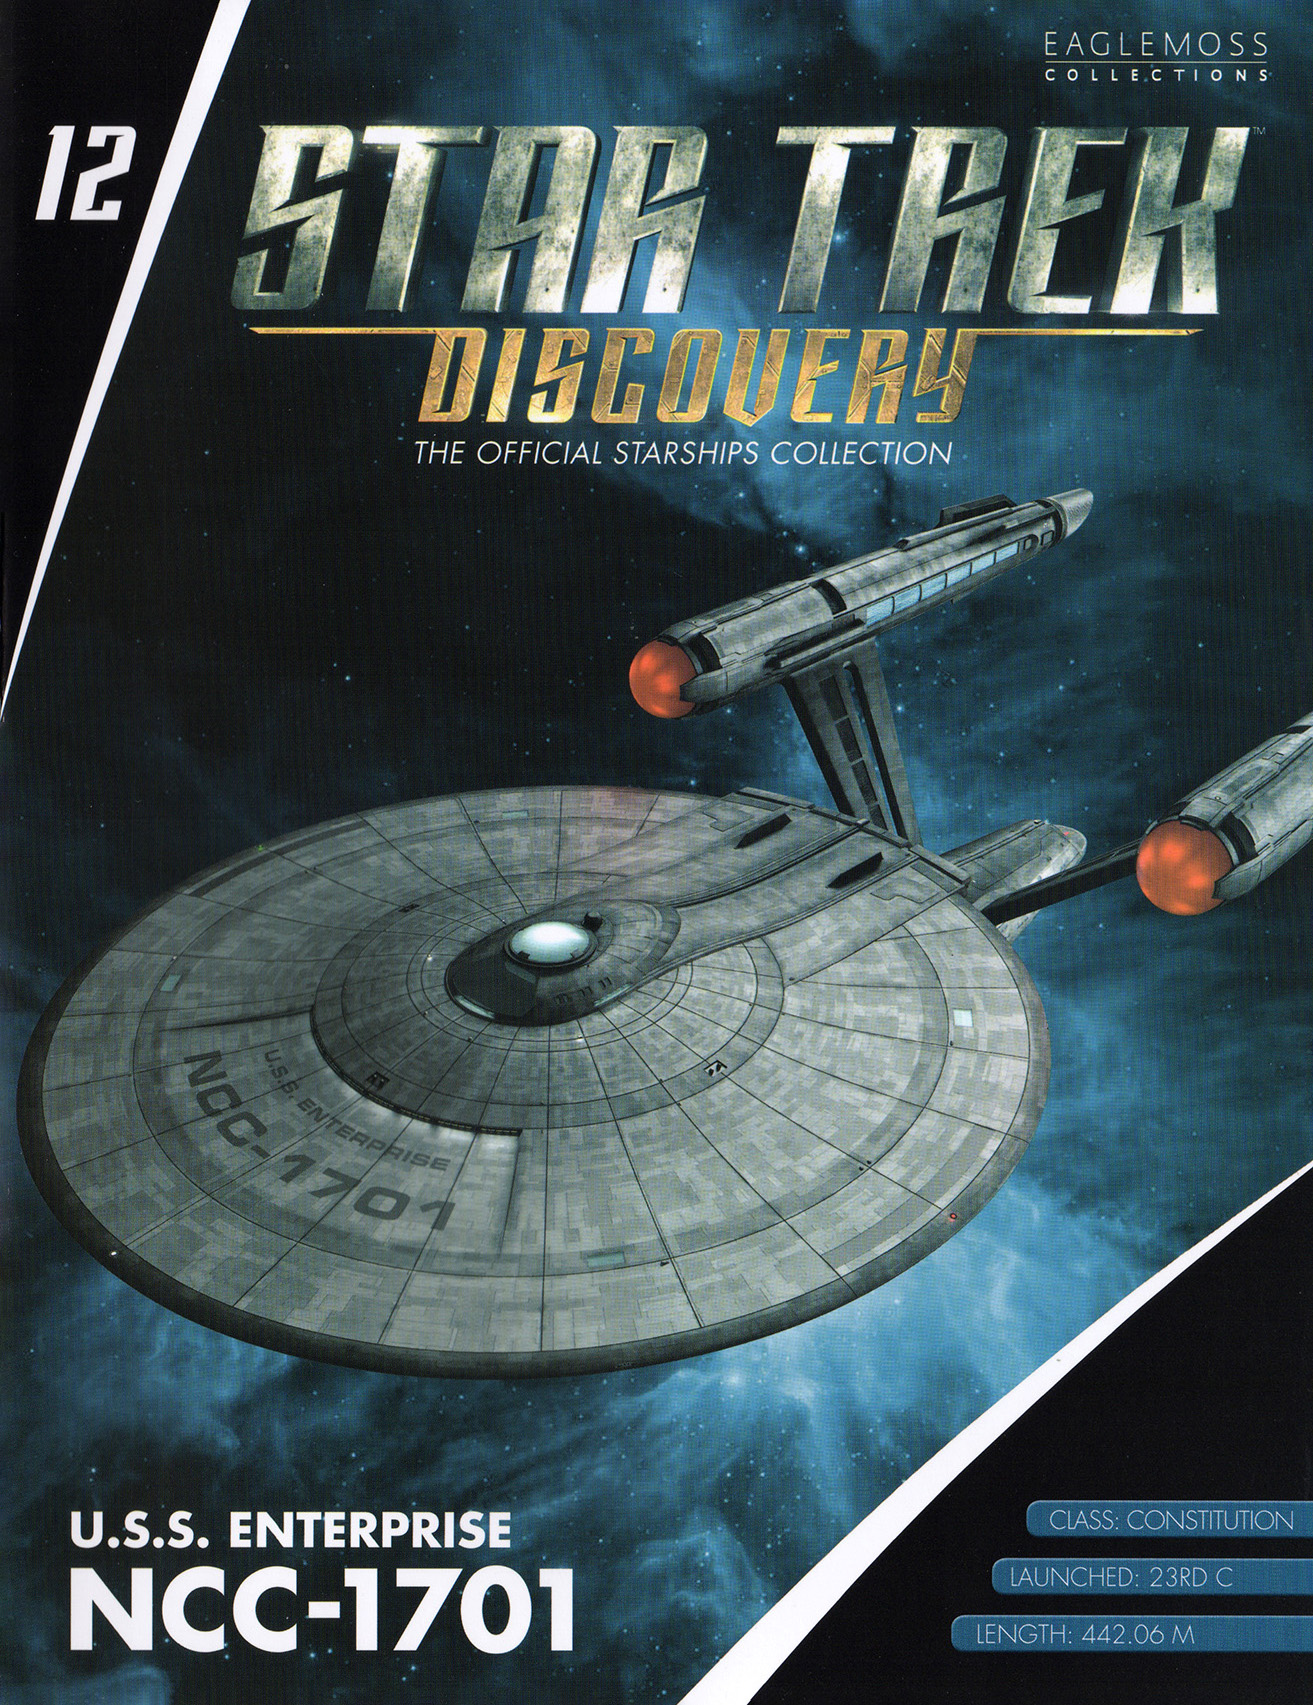 Eaglemoss Star Trek Starships Discovery Issue 12